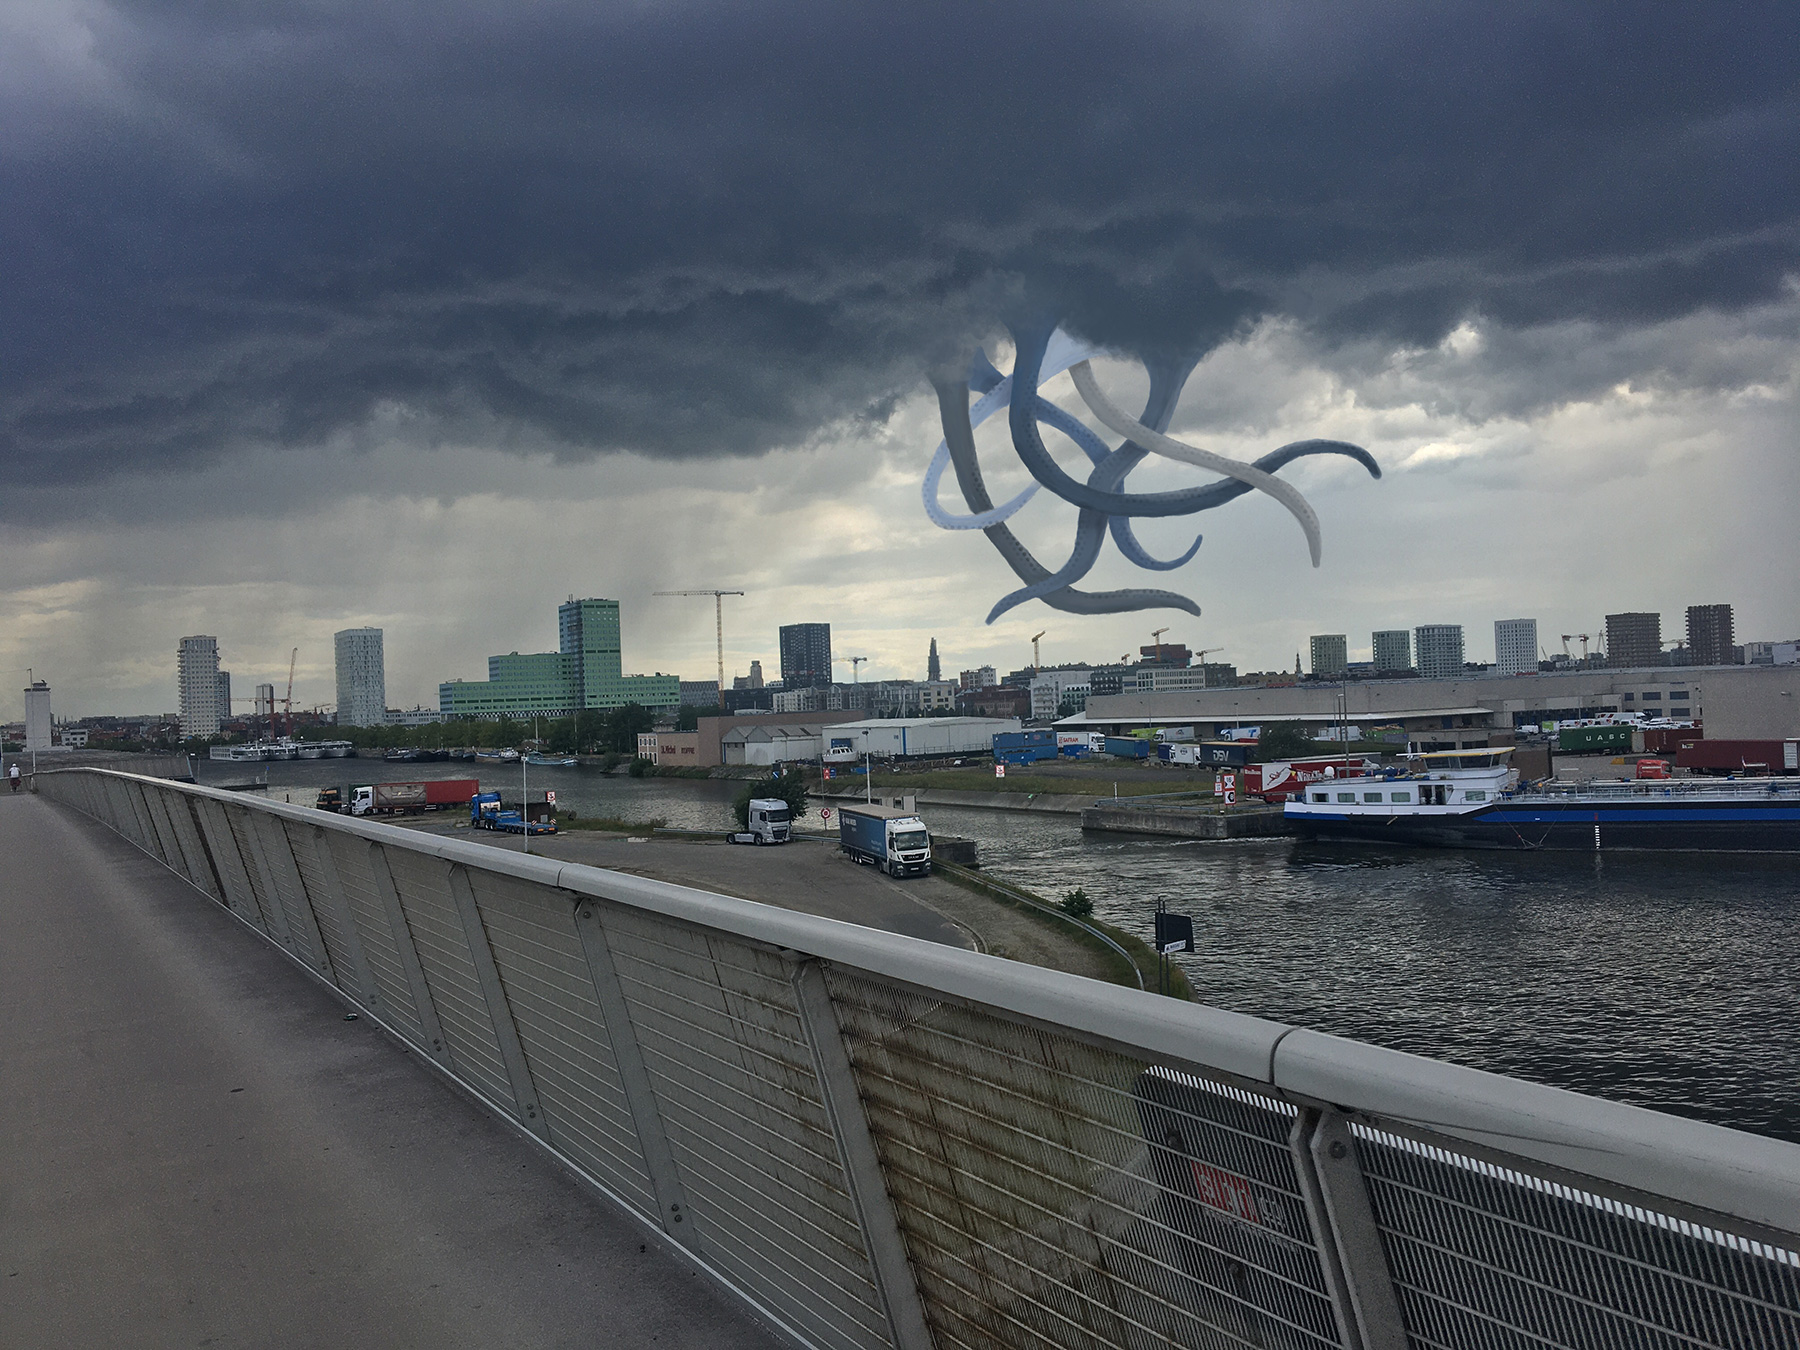 De legendarische onweertopus, die met z'n tentakels Antwerpen bestookt wanneer het onweert